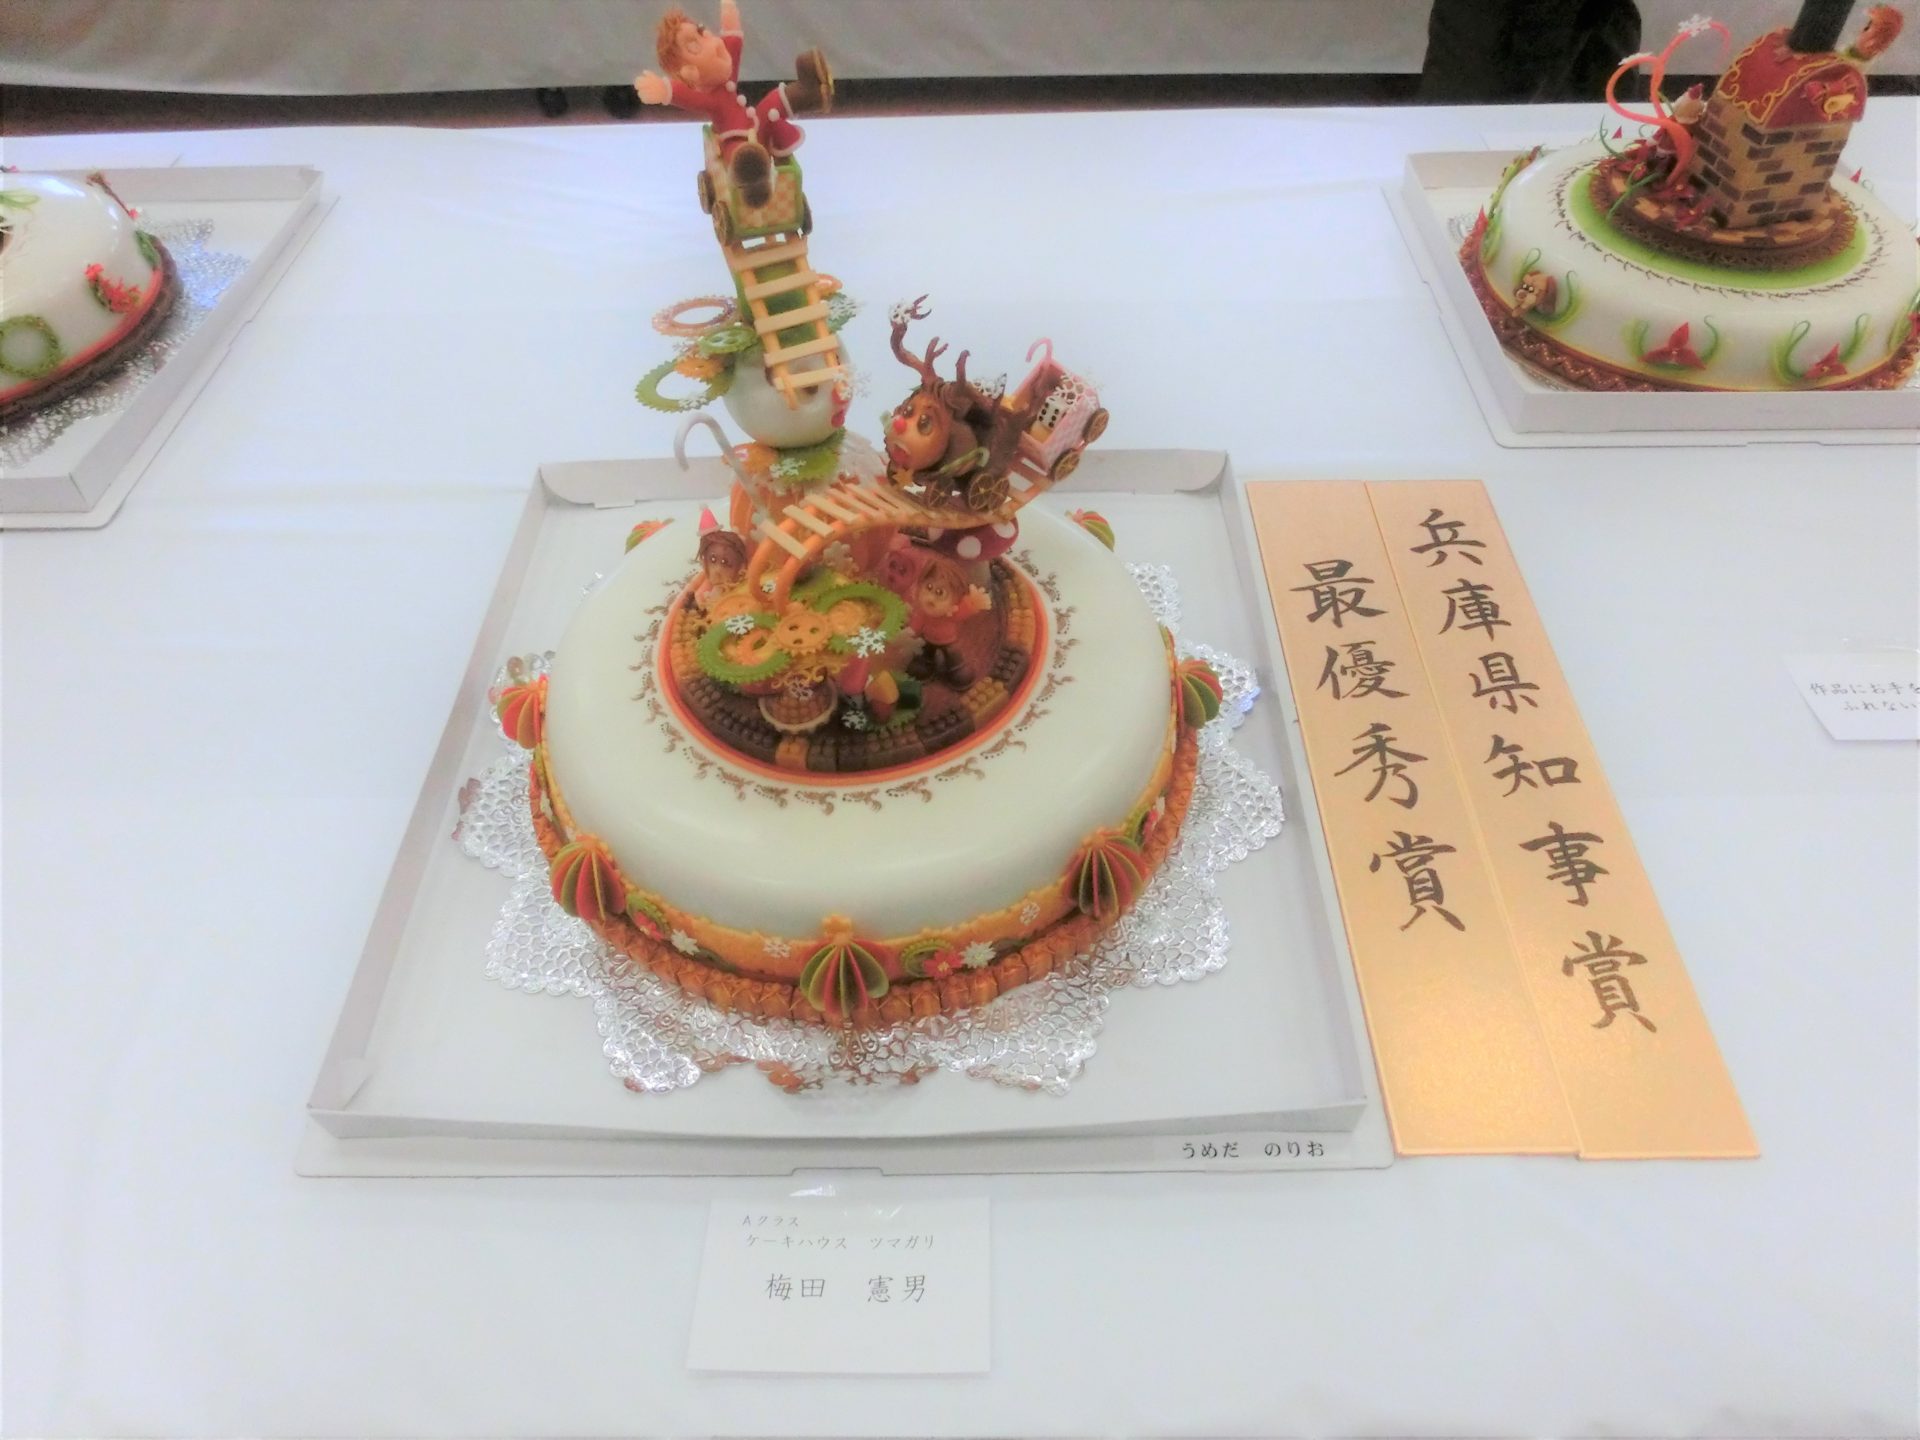 第60回クリスマスケーキコンテスト 入賞者発表 一般社団法人 兵庫県洋菓子協会